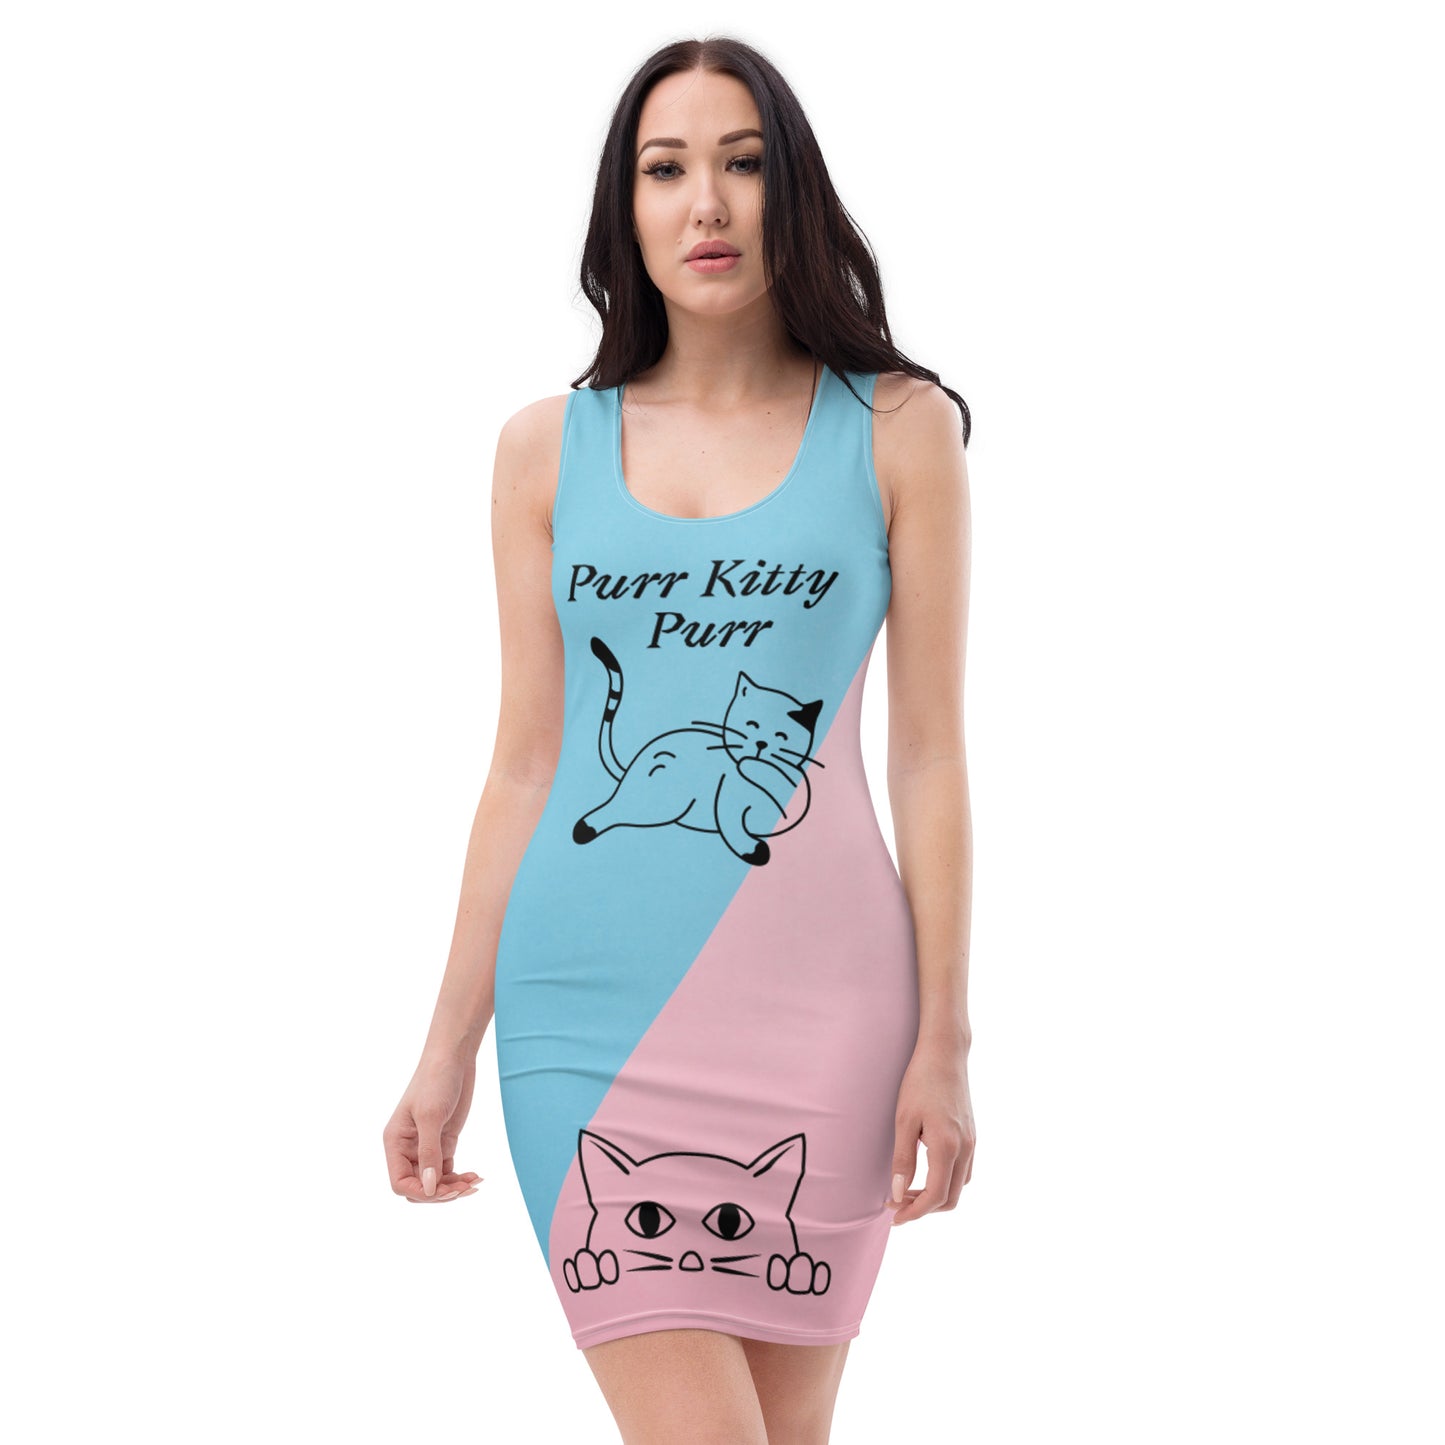 Purr Kitty Purr Dress